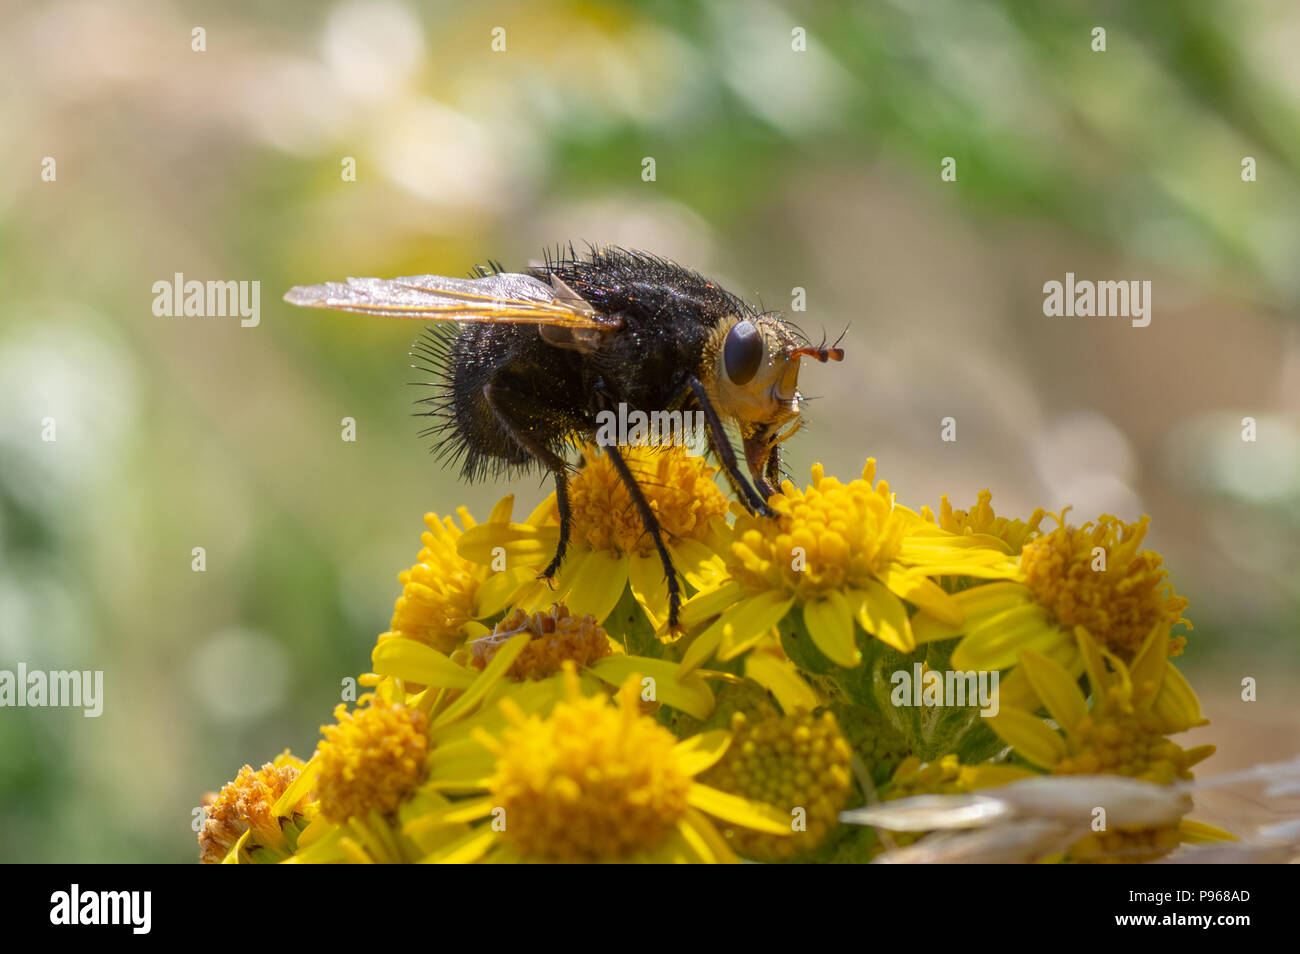 Volar nectaring Tachina grossa. El más grande de Europa, la familia tachinid Tachinidae, con el tórax y el abdomen peludo negro Foto de stock